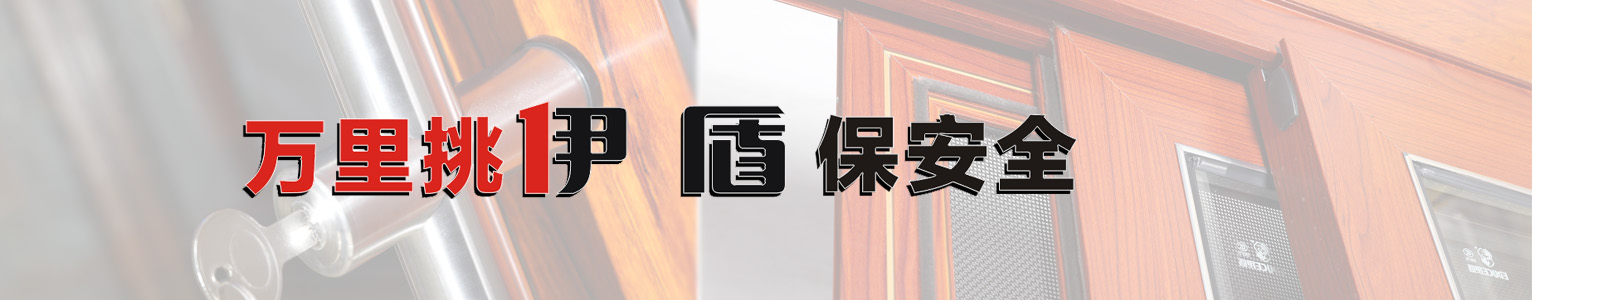 伊盾门窗荣获“中国铝合金门窗十大品牌”等多项称号